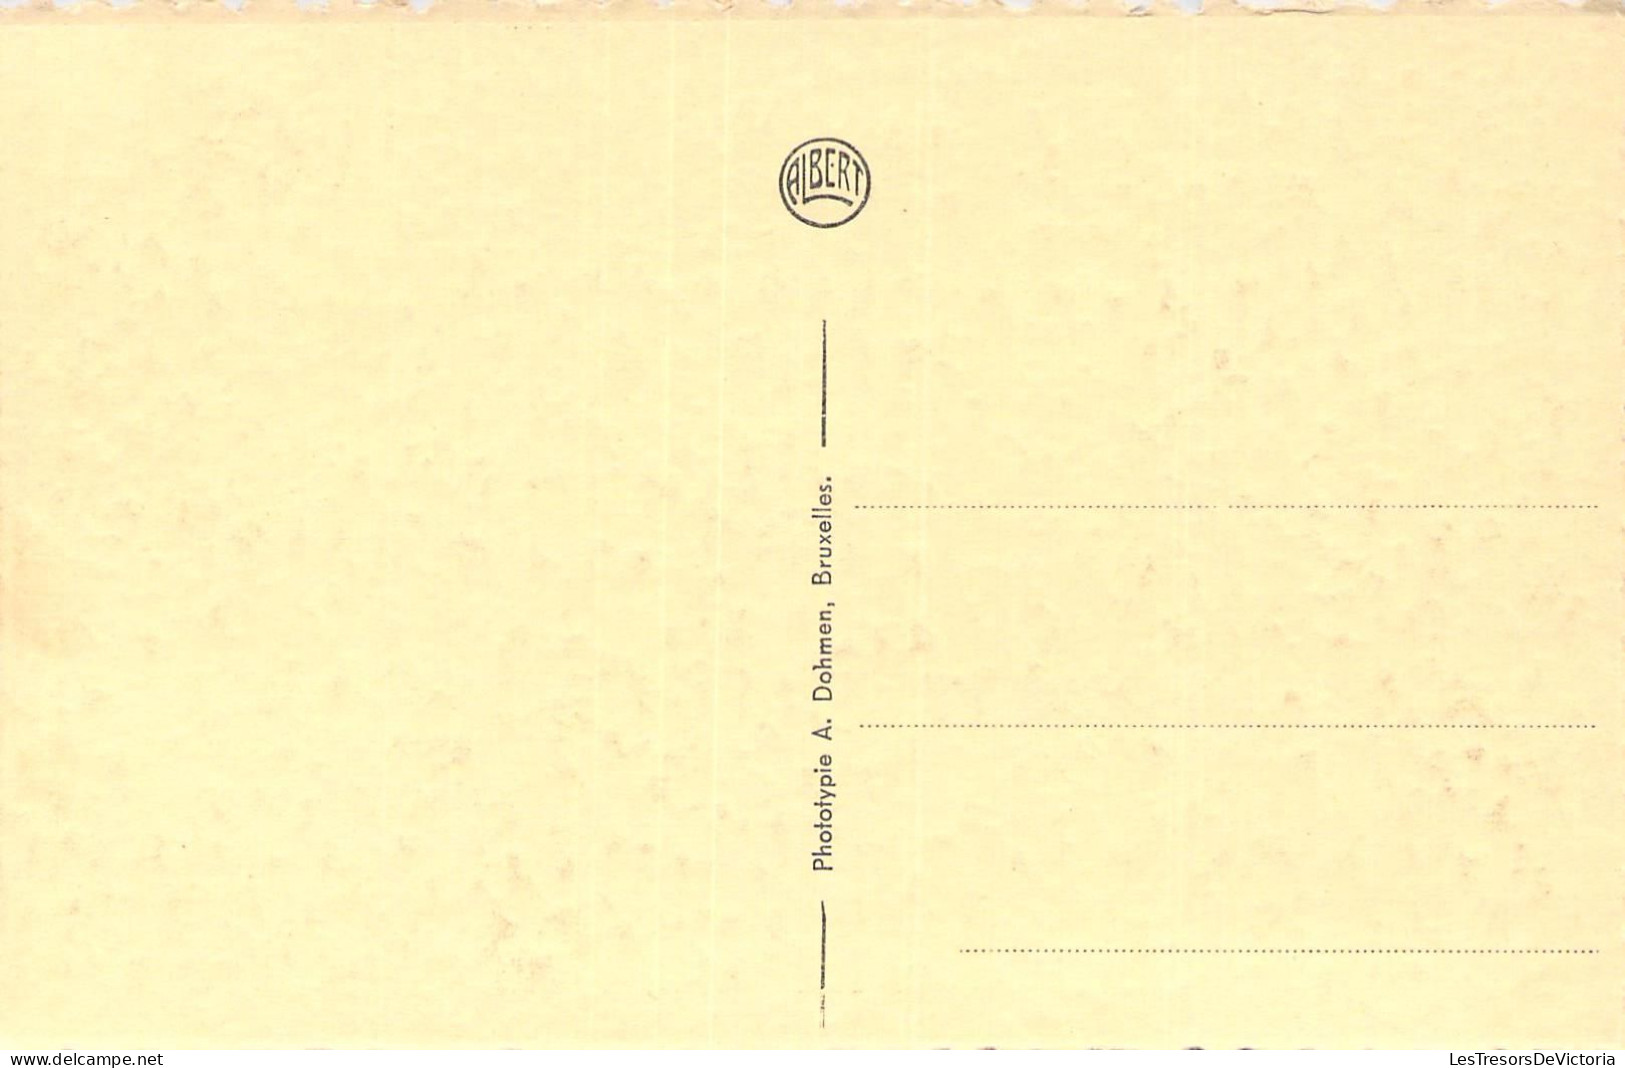 BELGIQUE - ARLON - Cathédrale - Carte Postale Ancienne - Arlon